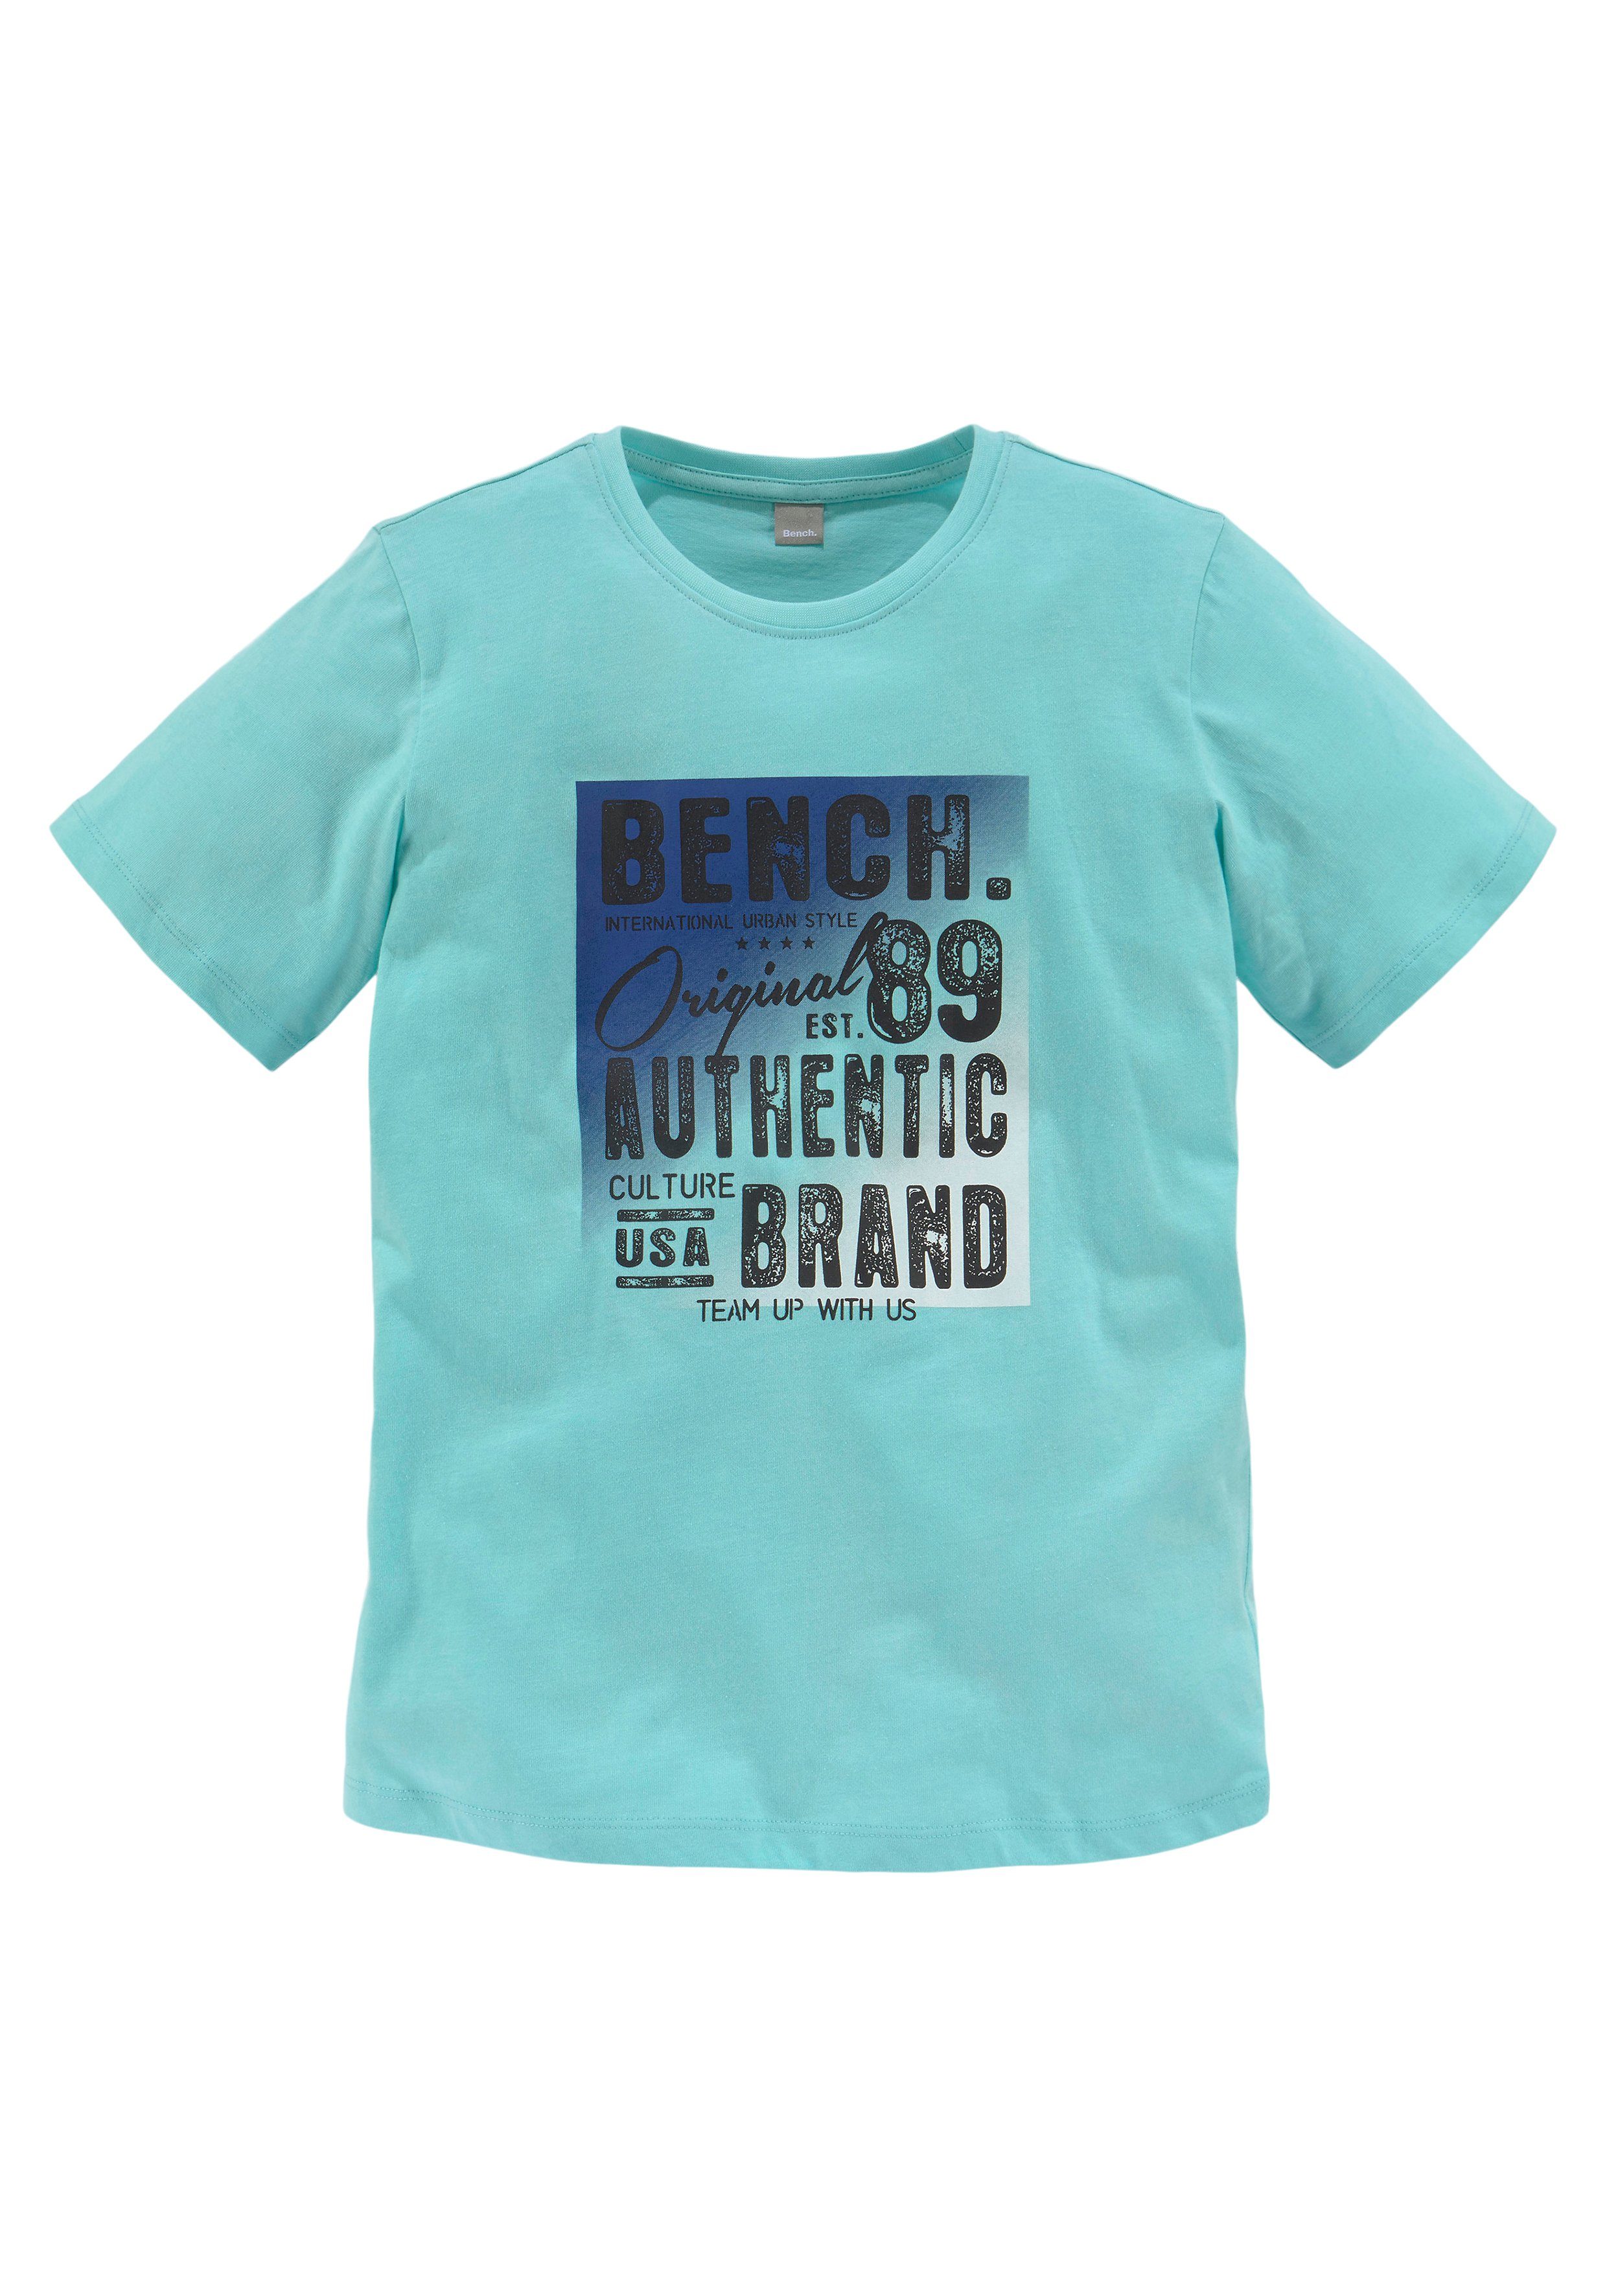 mehrfarbigem Logodruck mit Bench. T-Shirt